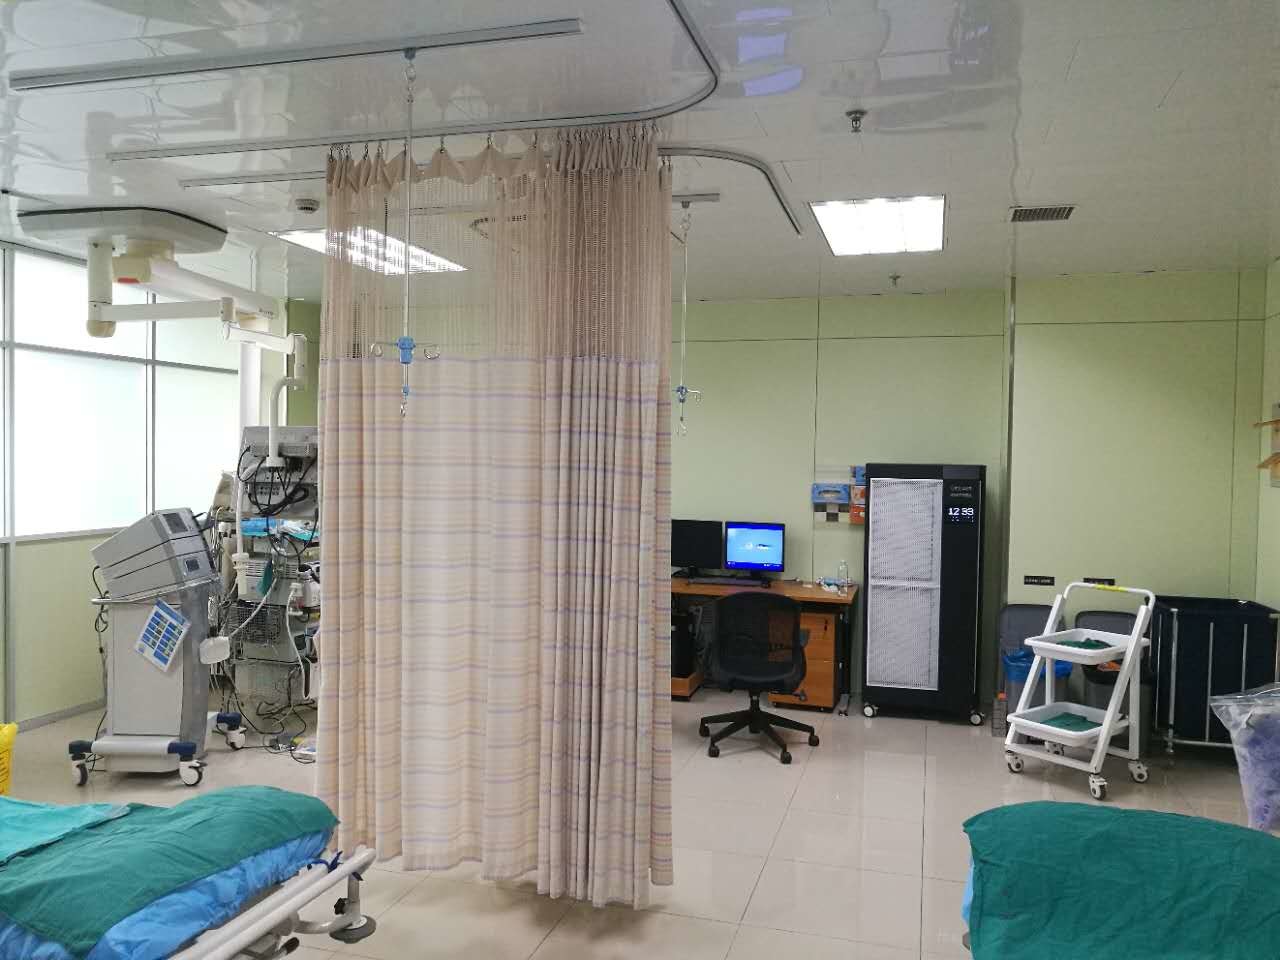 mais recente caso da empresa sobre Terreno de Songjiang, o hospital do primeiro pessoa de Shanghai